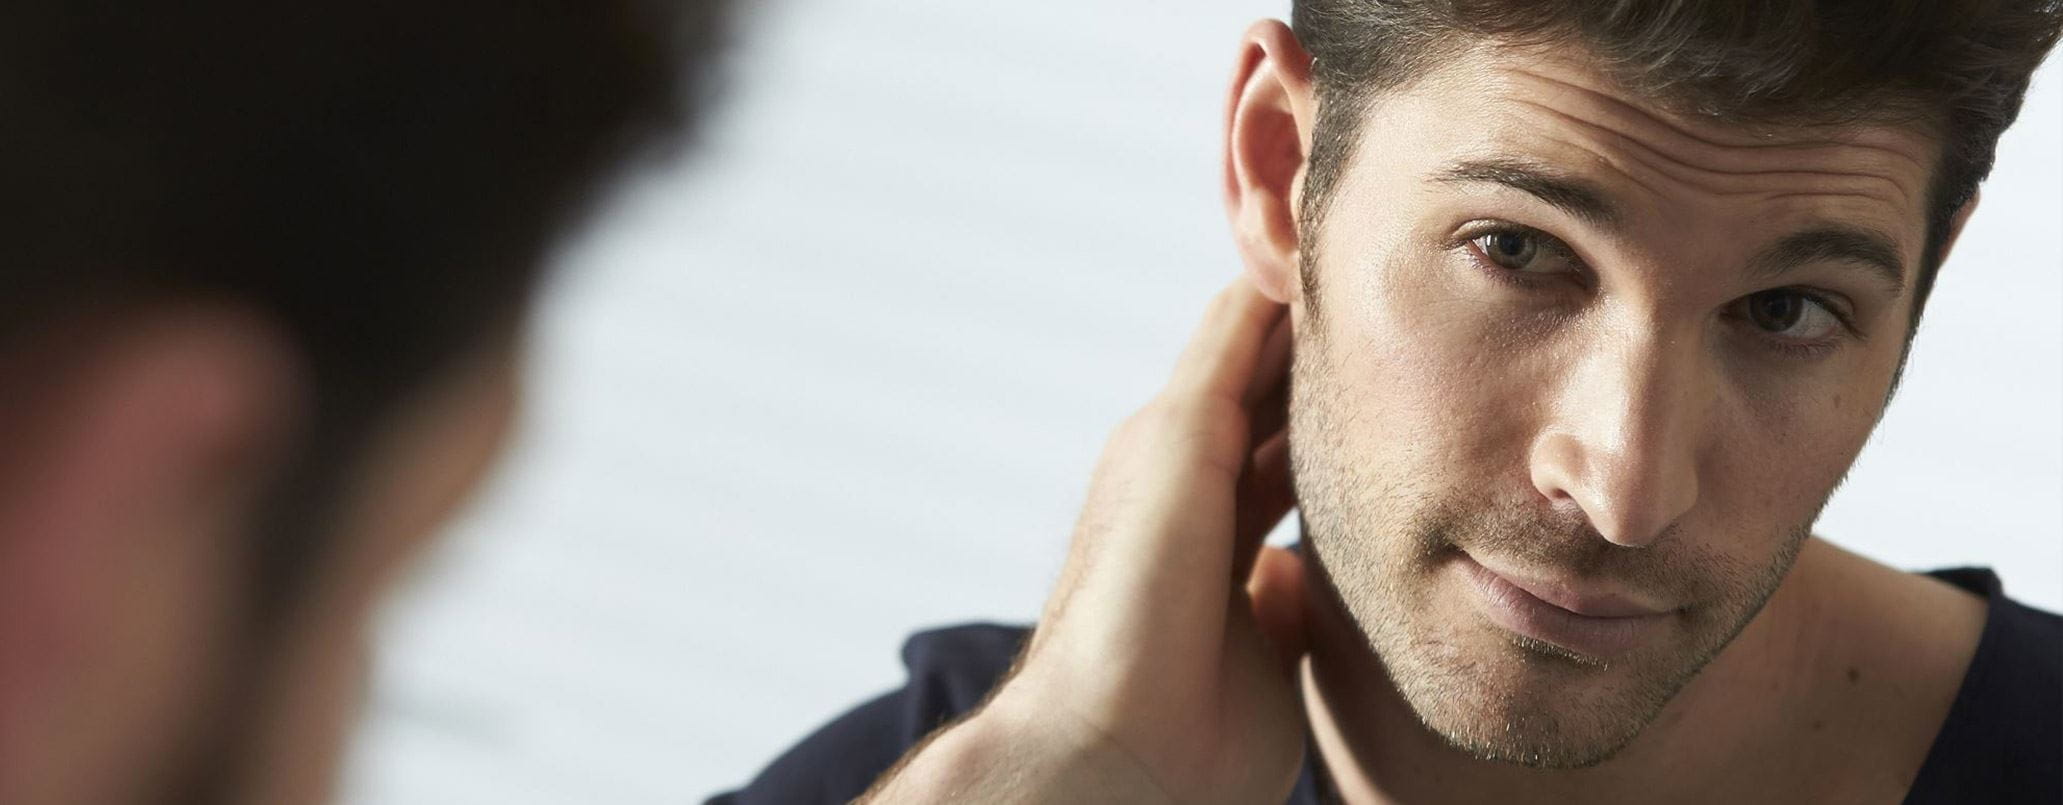 Come tagliarsi i capelli da soli: i consigli per lui - NIVEA